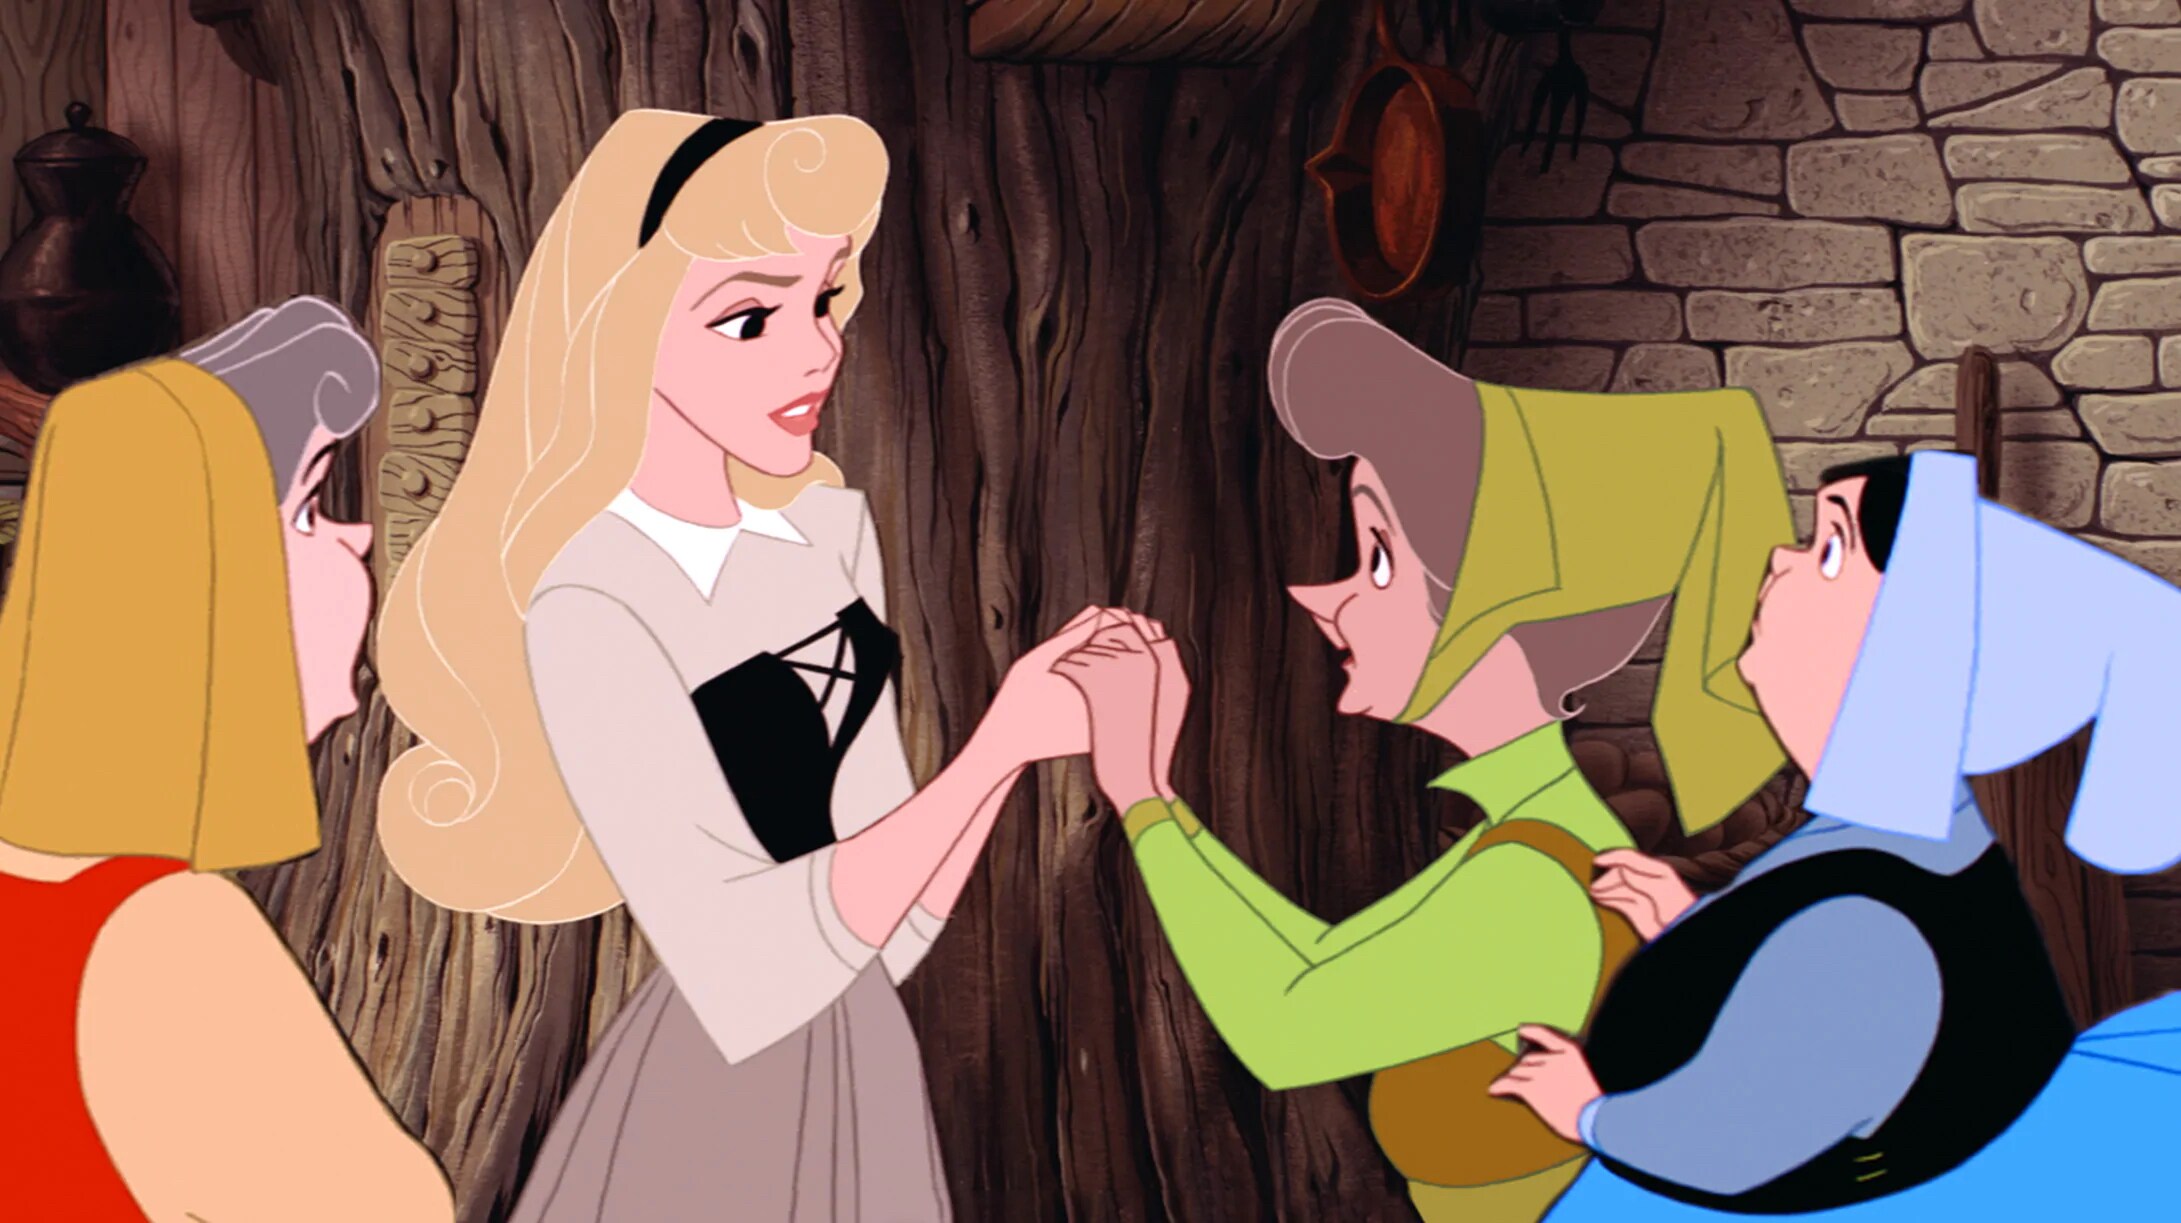 Aurora, Wiki Disney Princesas